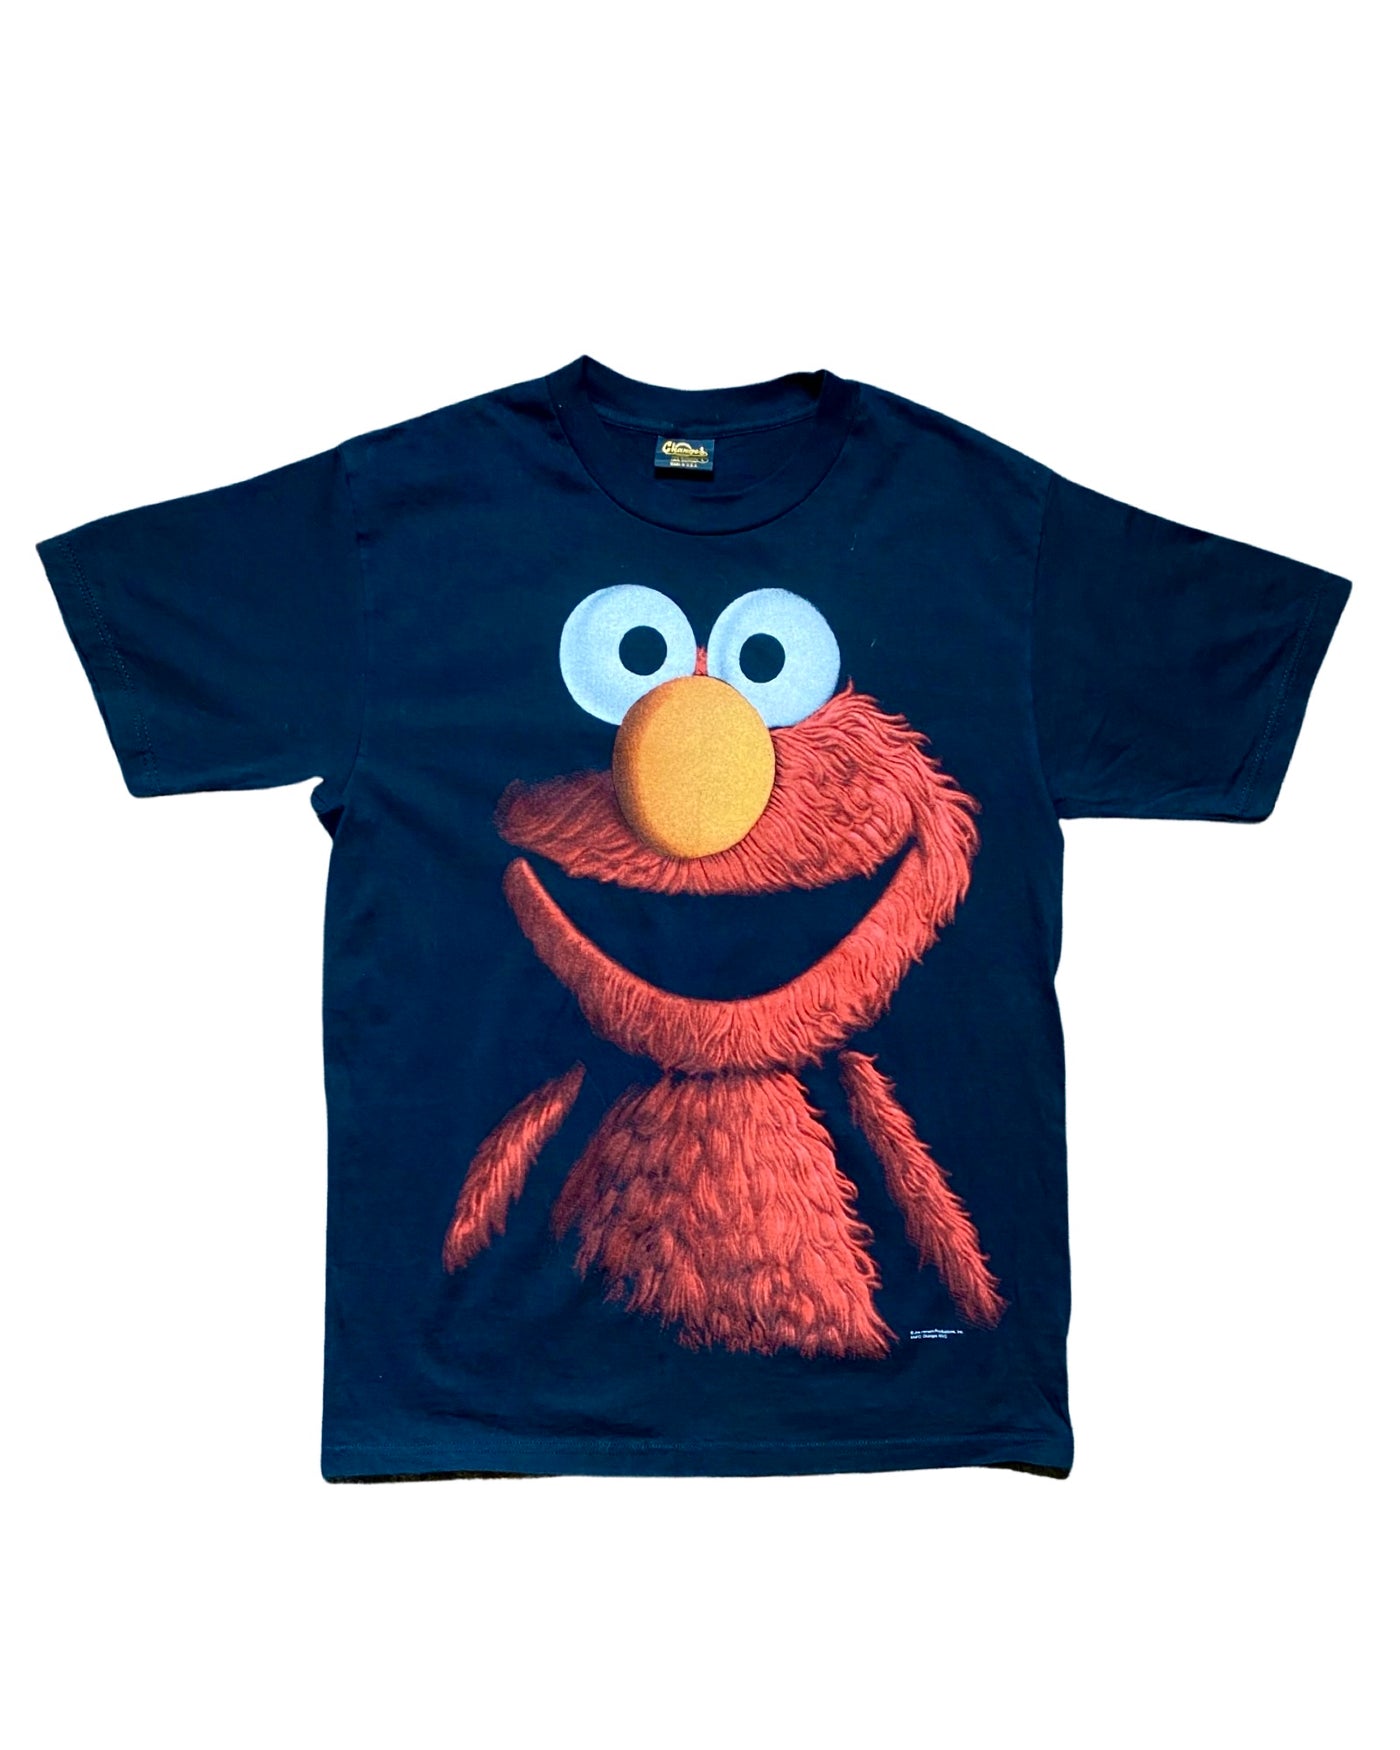 Vintage 90s Elmo Shadow T-Shirt